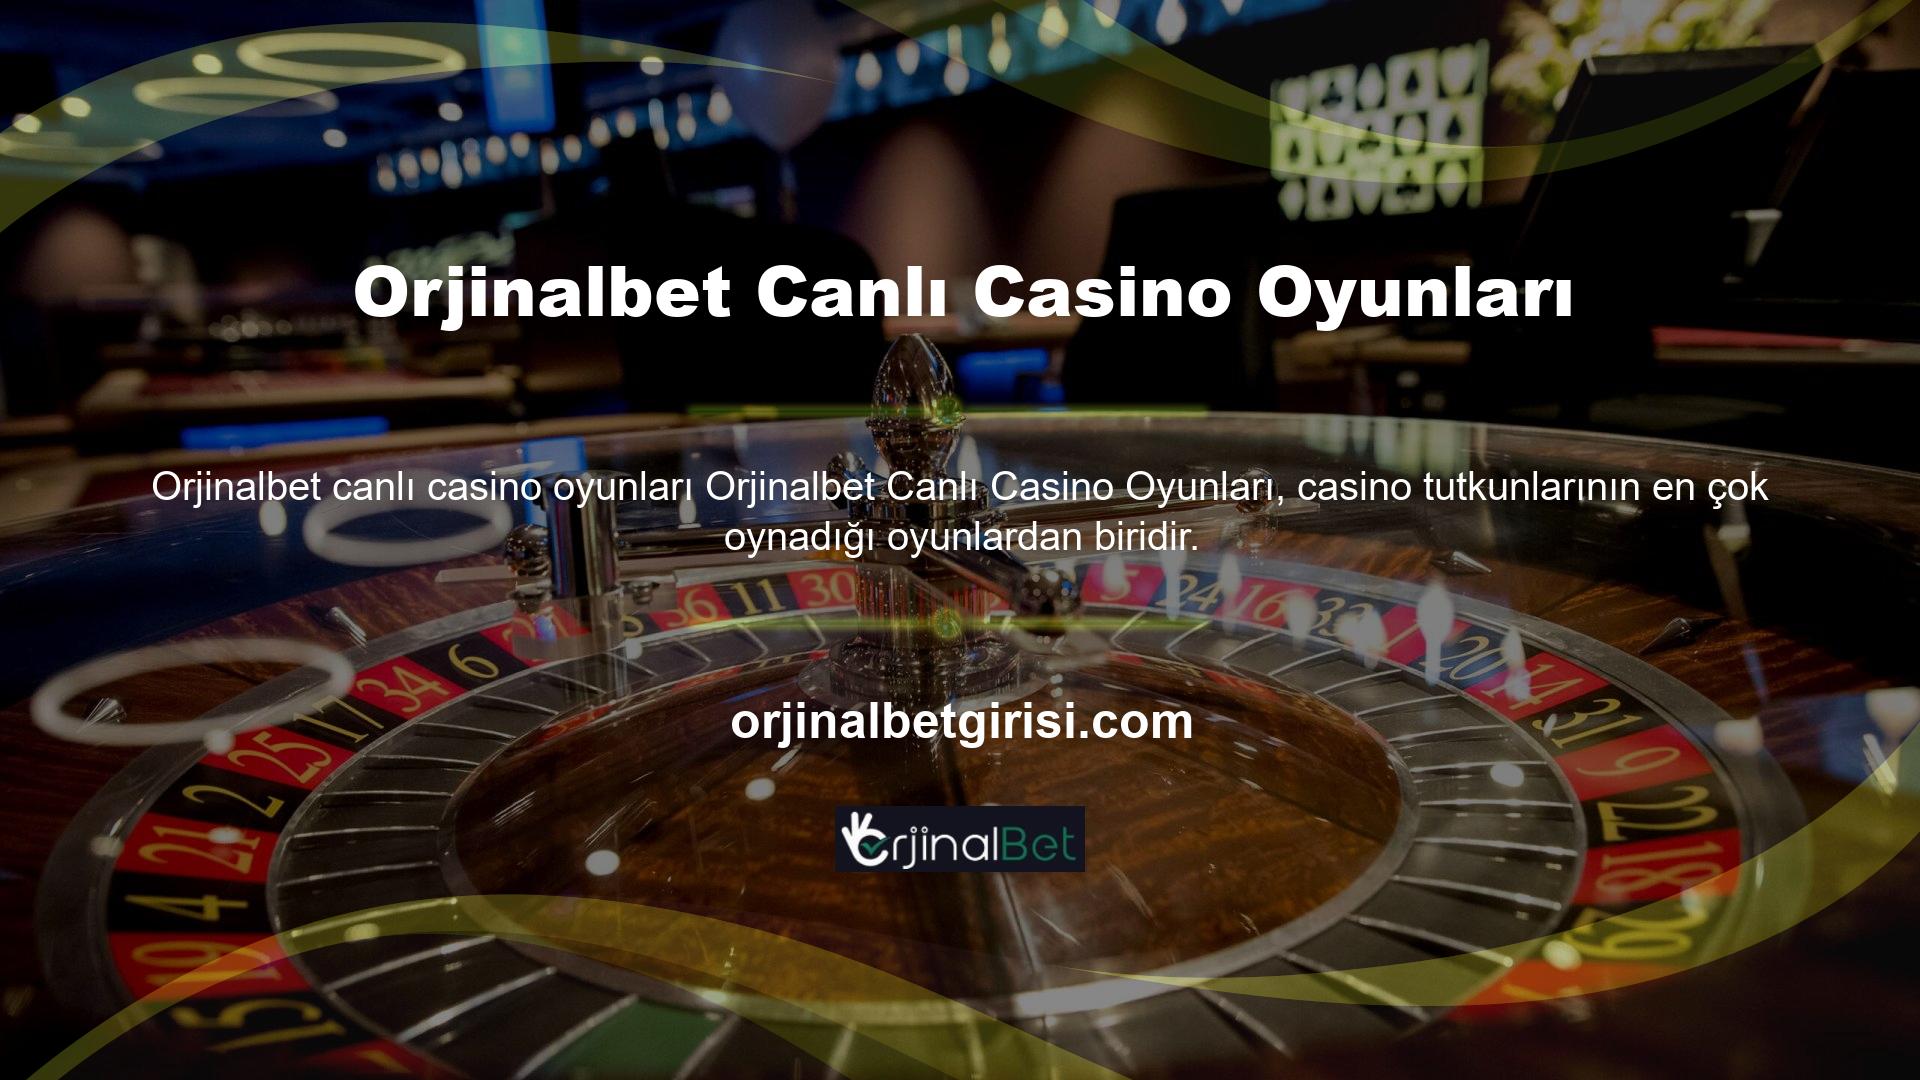 Canlı casino oyunları, kullanıcıların anında bahis oynamasına ve canlı oyuncularla oynamasına olanak tanır